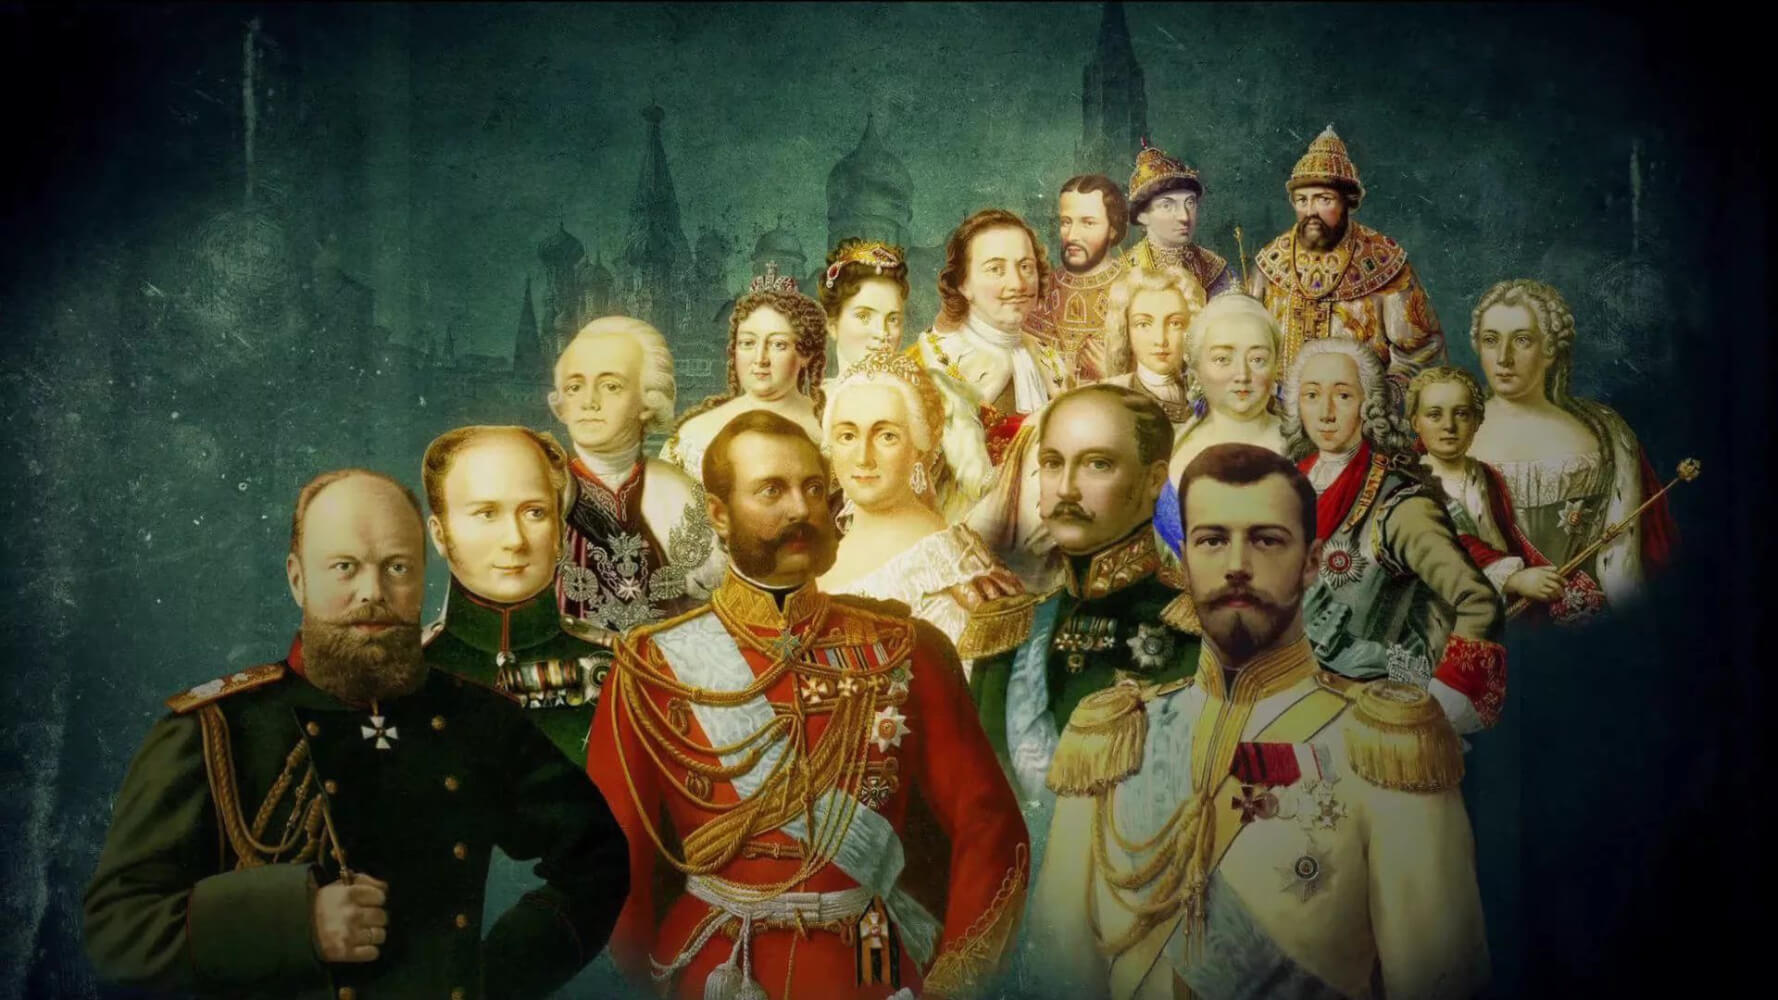 Исторические события в картинках история россии